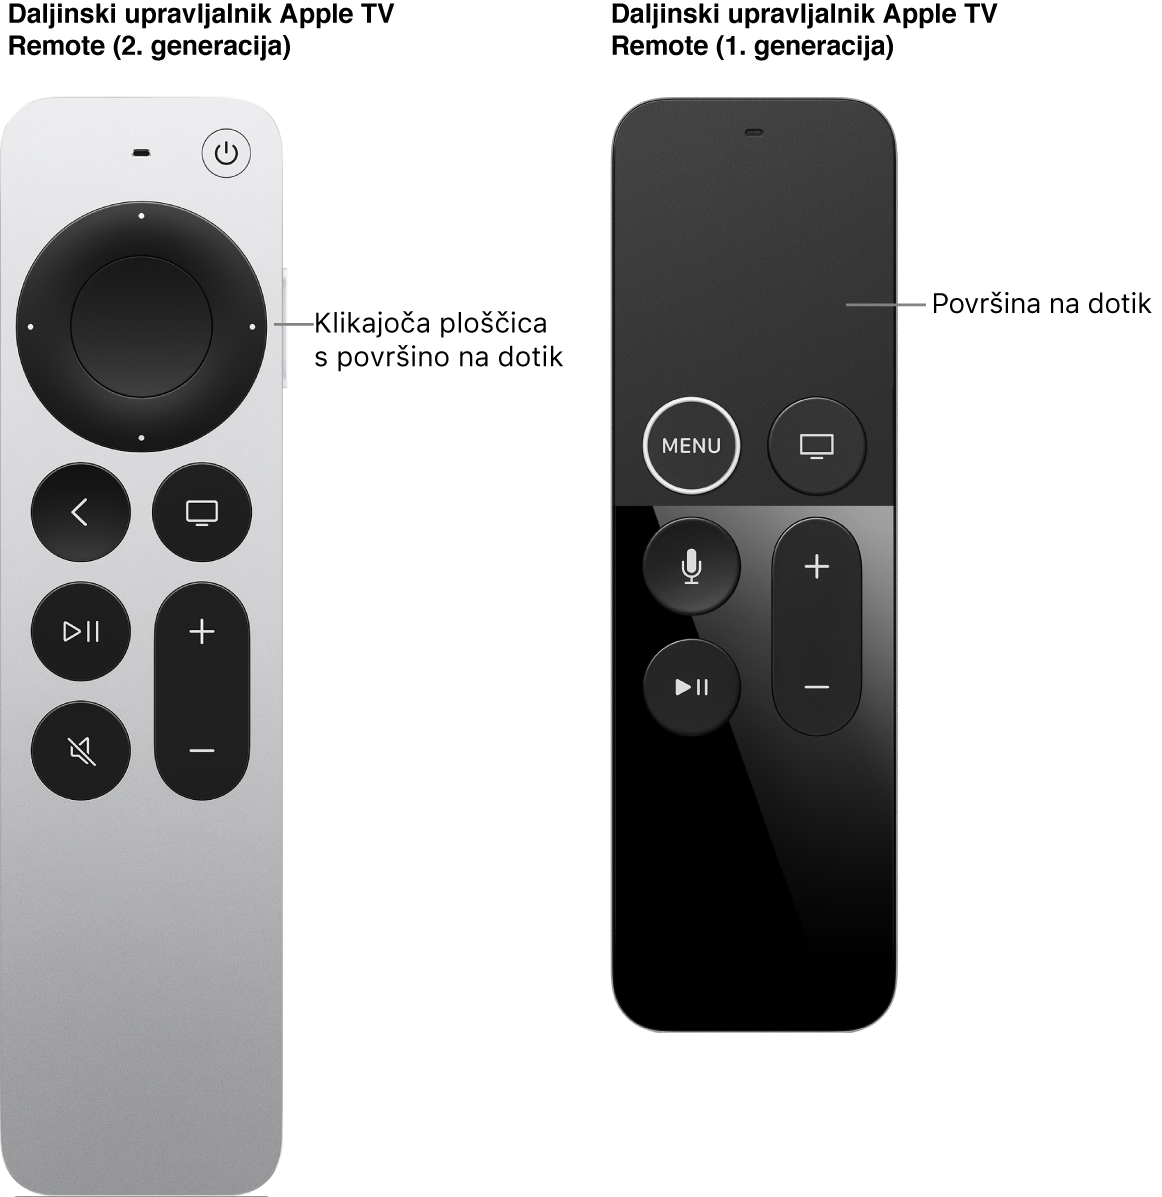 Daljinski upravljalnik Apple TV Remote (2. generacije) s klikajočo ploščico in daljinskega upravljalnika Apple TV Remote (1. generacije) s površino na dotik